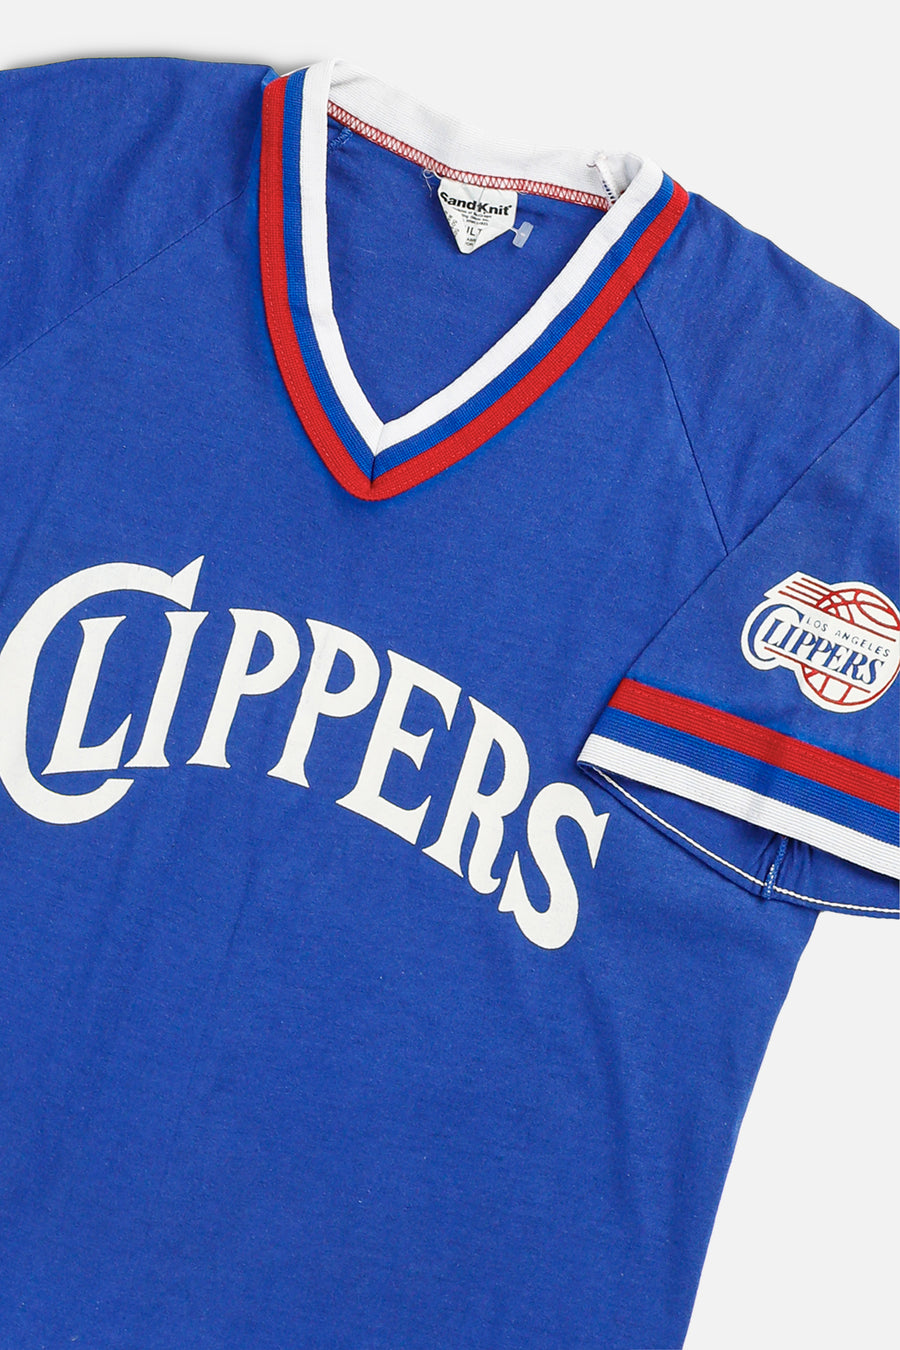 Vintage LA Clippers NBA Tee - Women's XS